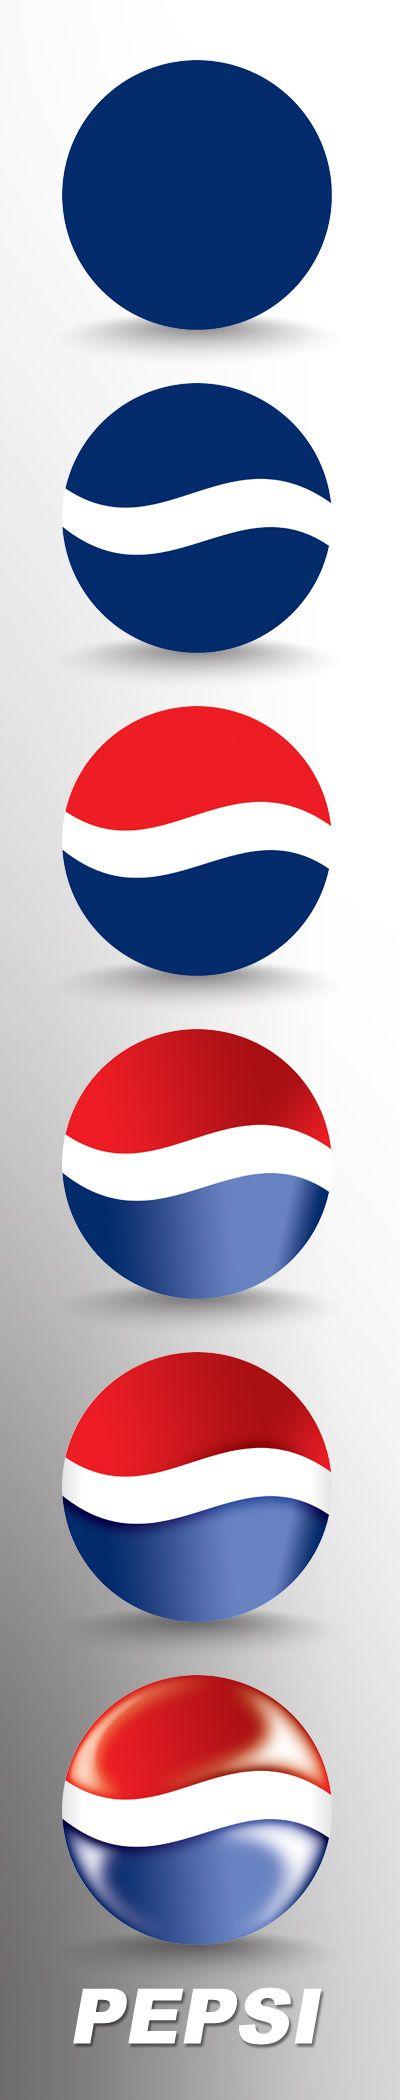 Pepsi Globe Logo - baird sermons: pepsi logos